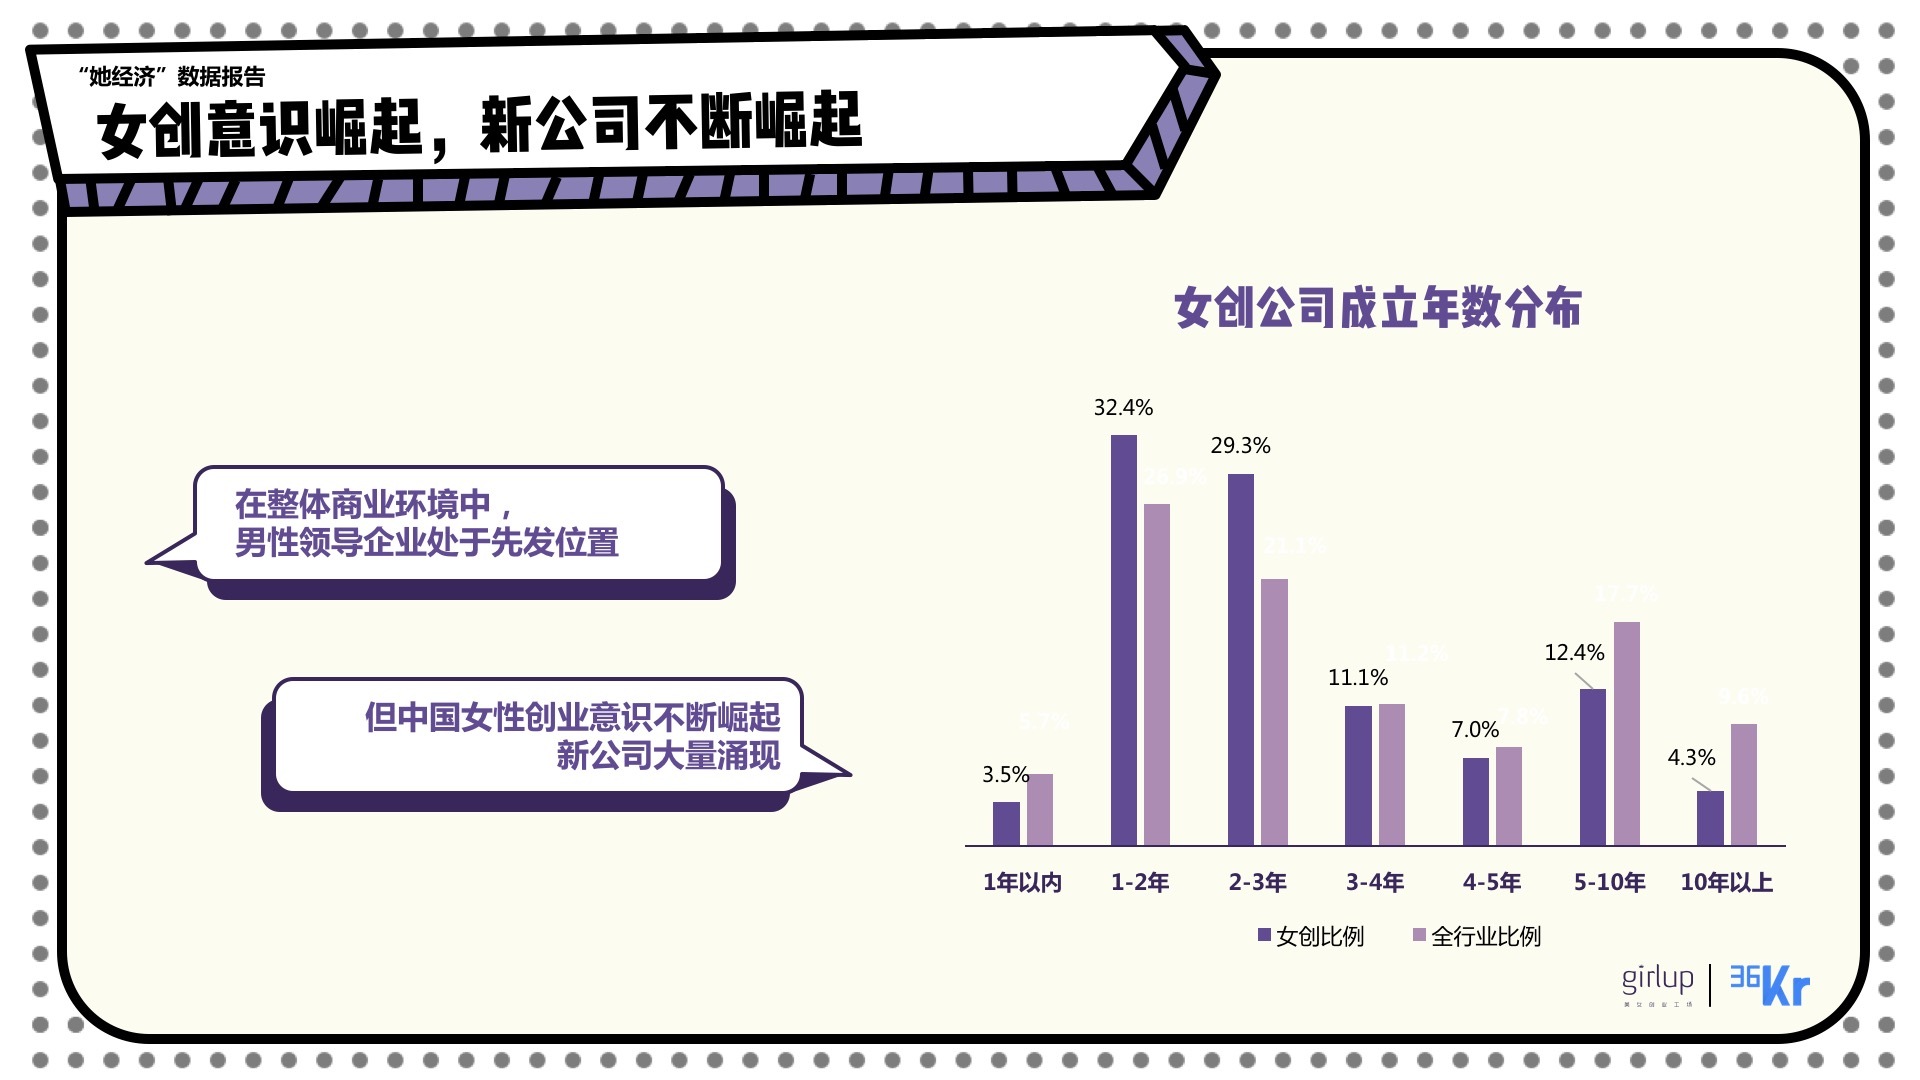 中国酒店业现状及未来发展趋势_2015中国人才招聘趋势报告_女性创业网